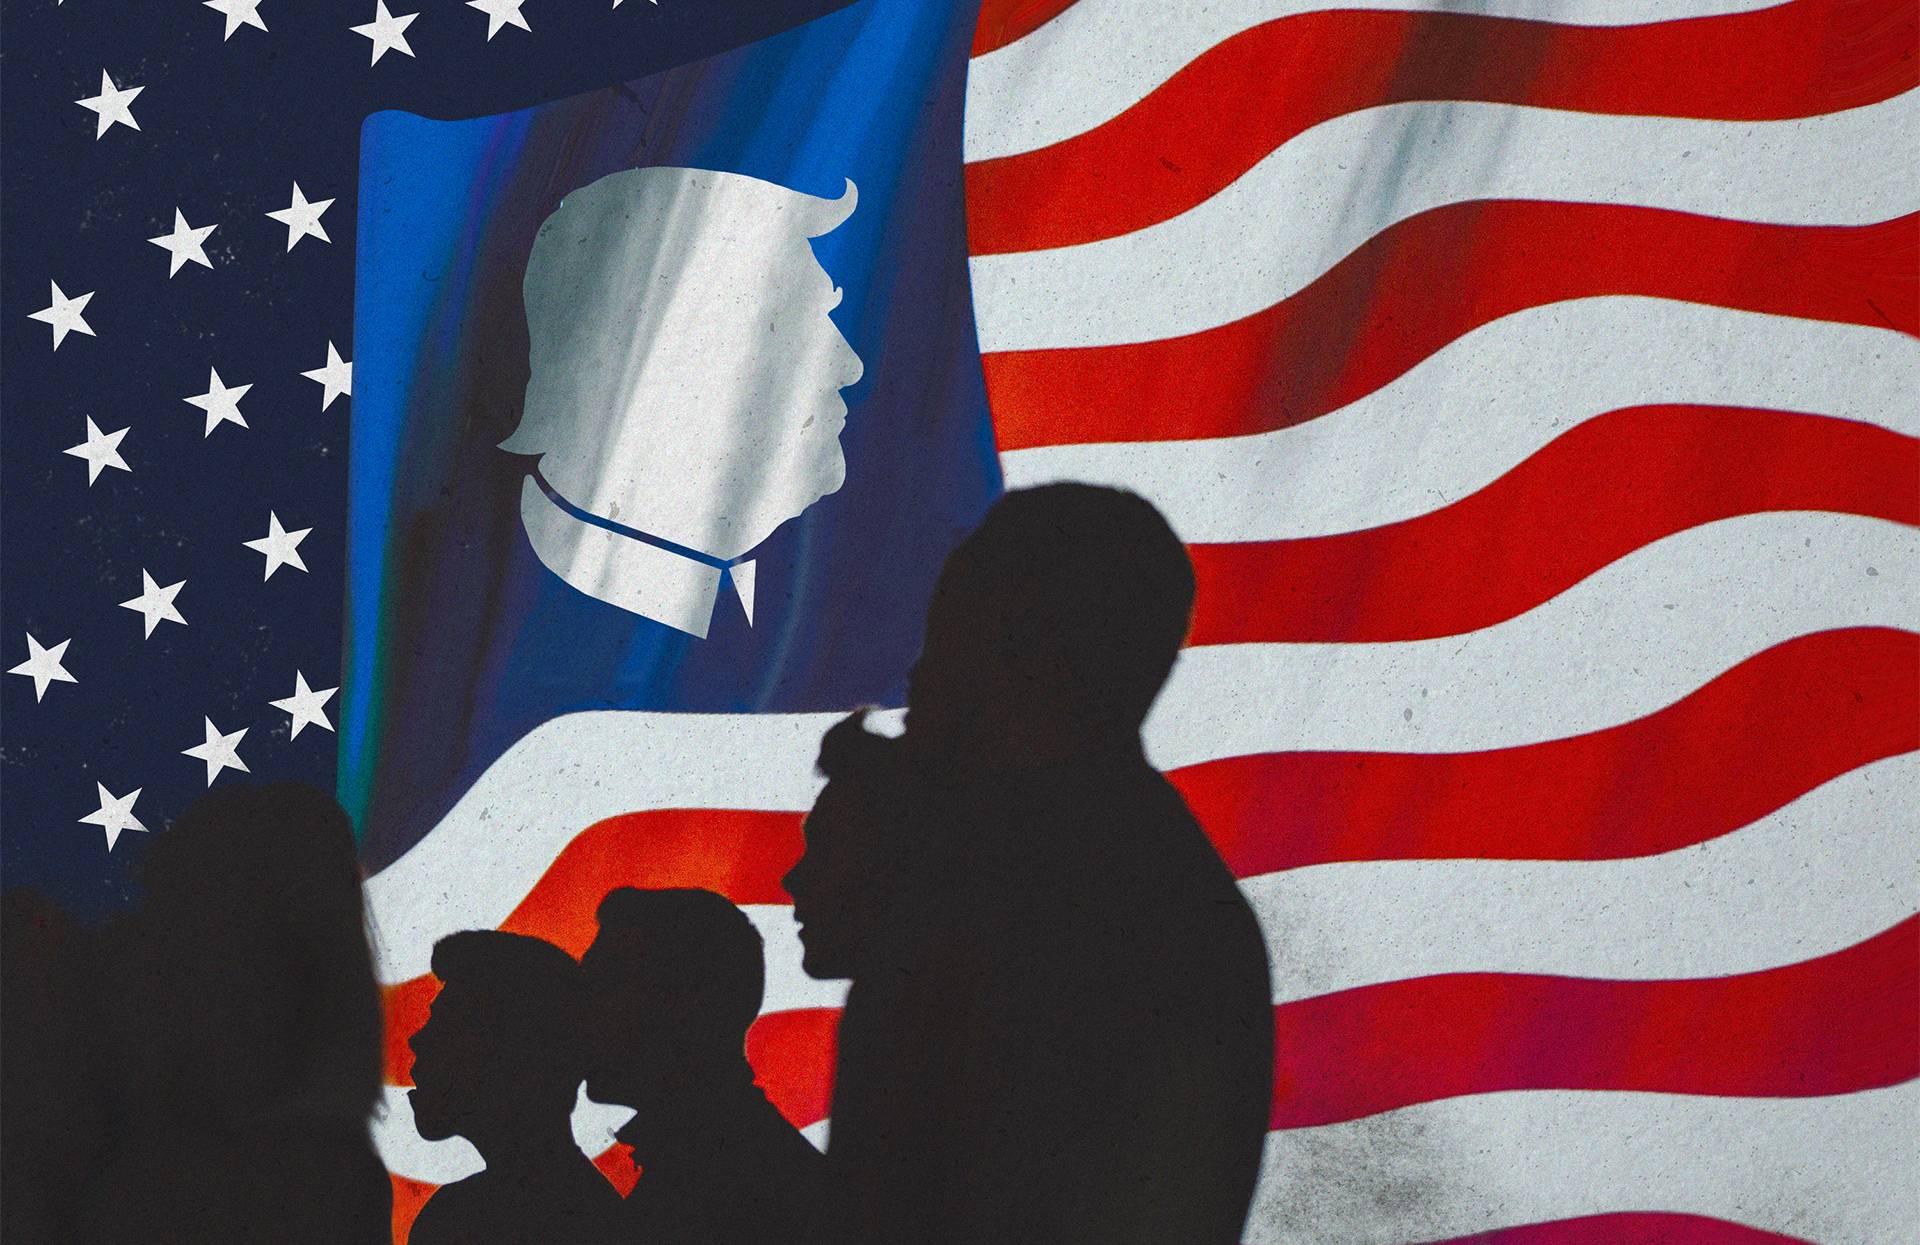 ilustracja przedstawia ludzi stojących na tle amerykańskiej flagi, która zamiast gwiazdek ma profil Donalda Trumpa